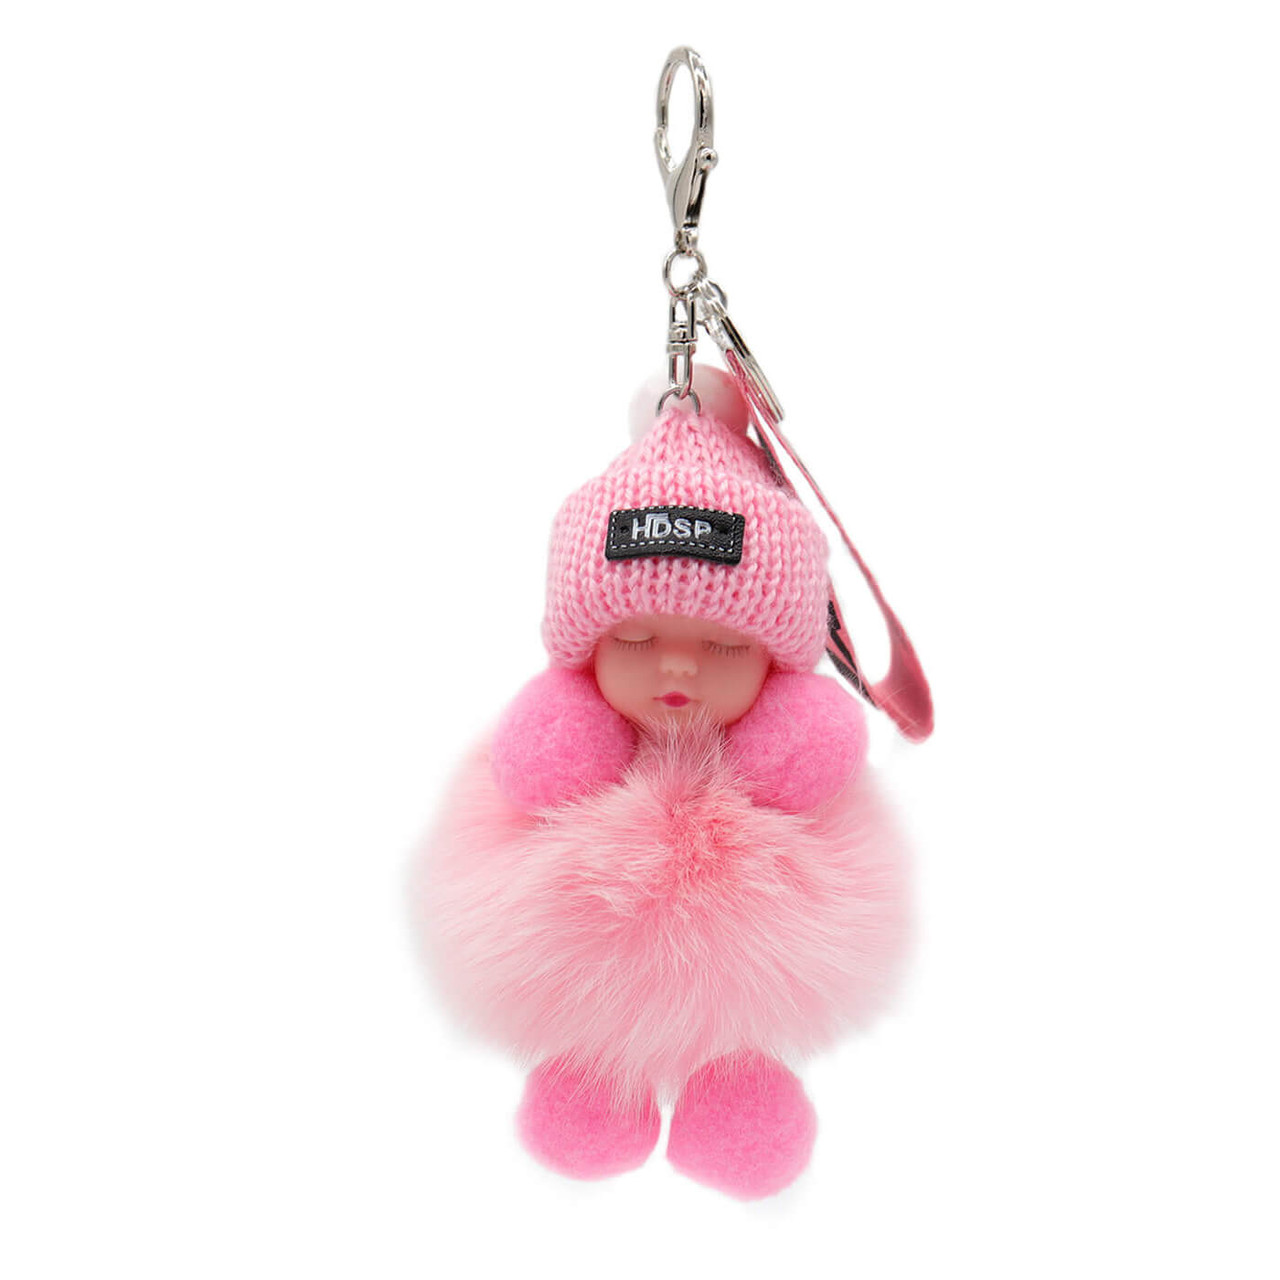 Soft Pink Pom Pom Keychain